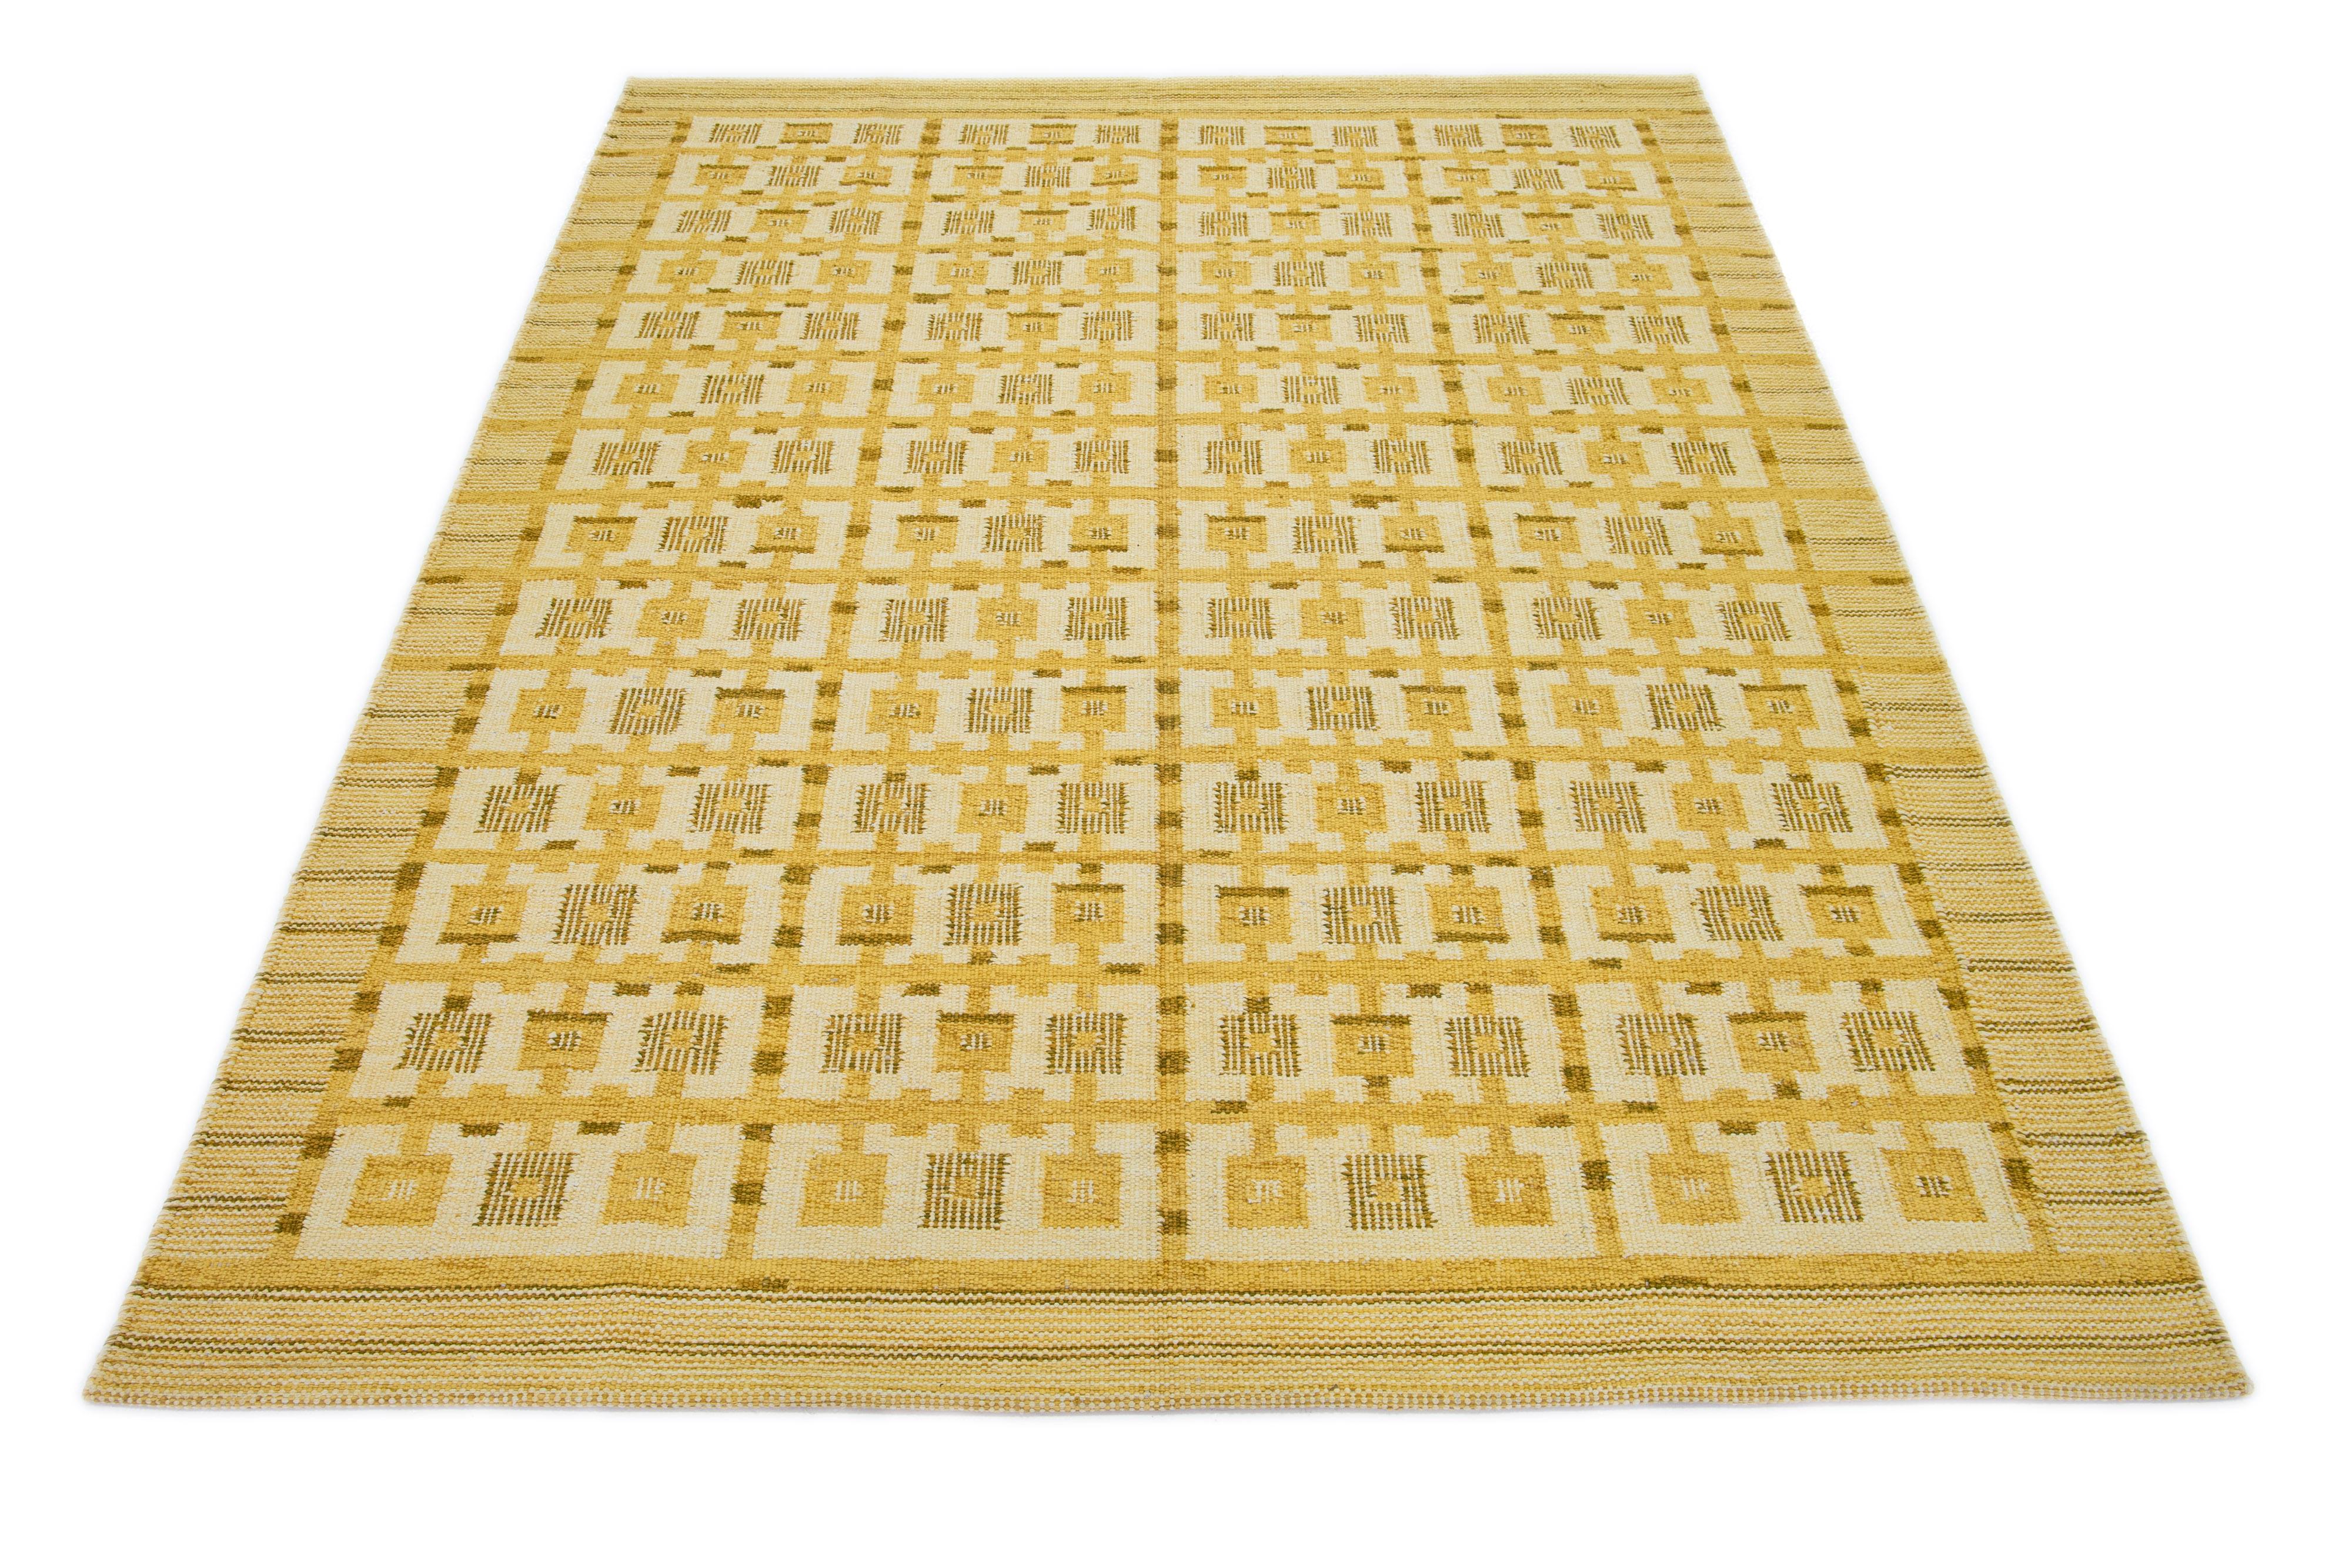 Dieser Flachgewebe-Teppich zeigt ein schickes, modernes schwedisches Design mit gelber Feldfarbe. Der Teppich ist mit einem geometrischen Muster in Beigetönen versehen.

 Dieser Teppich misst 7'11